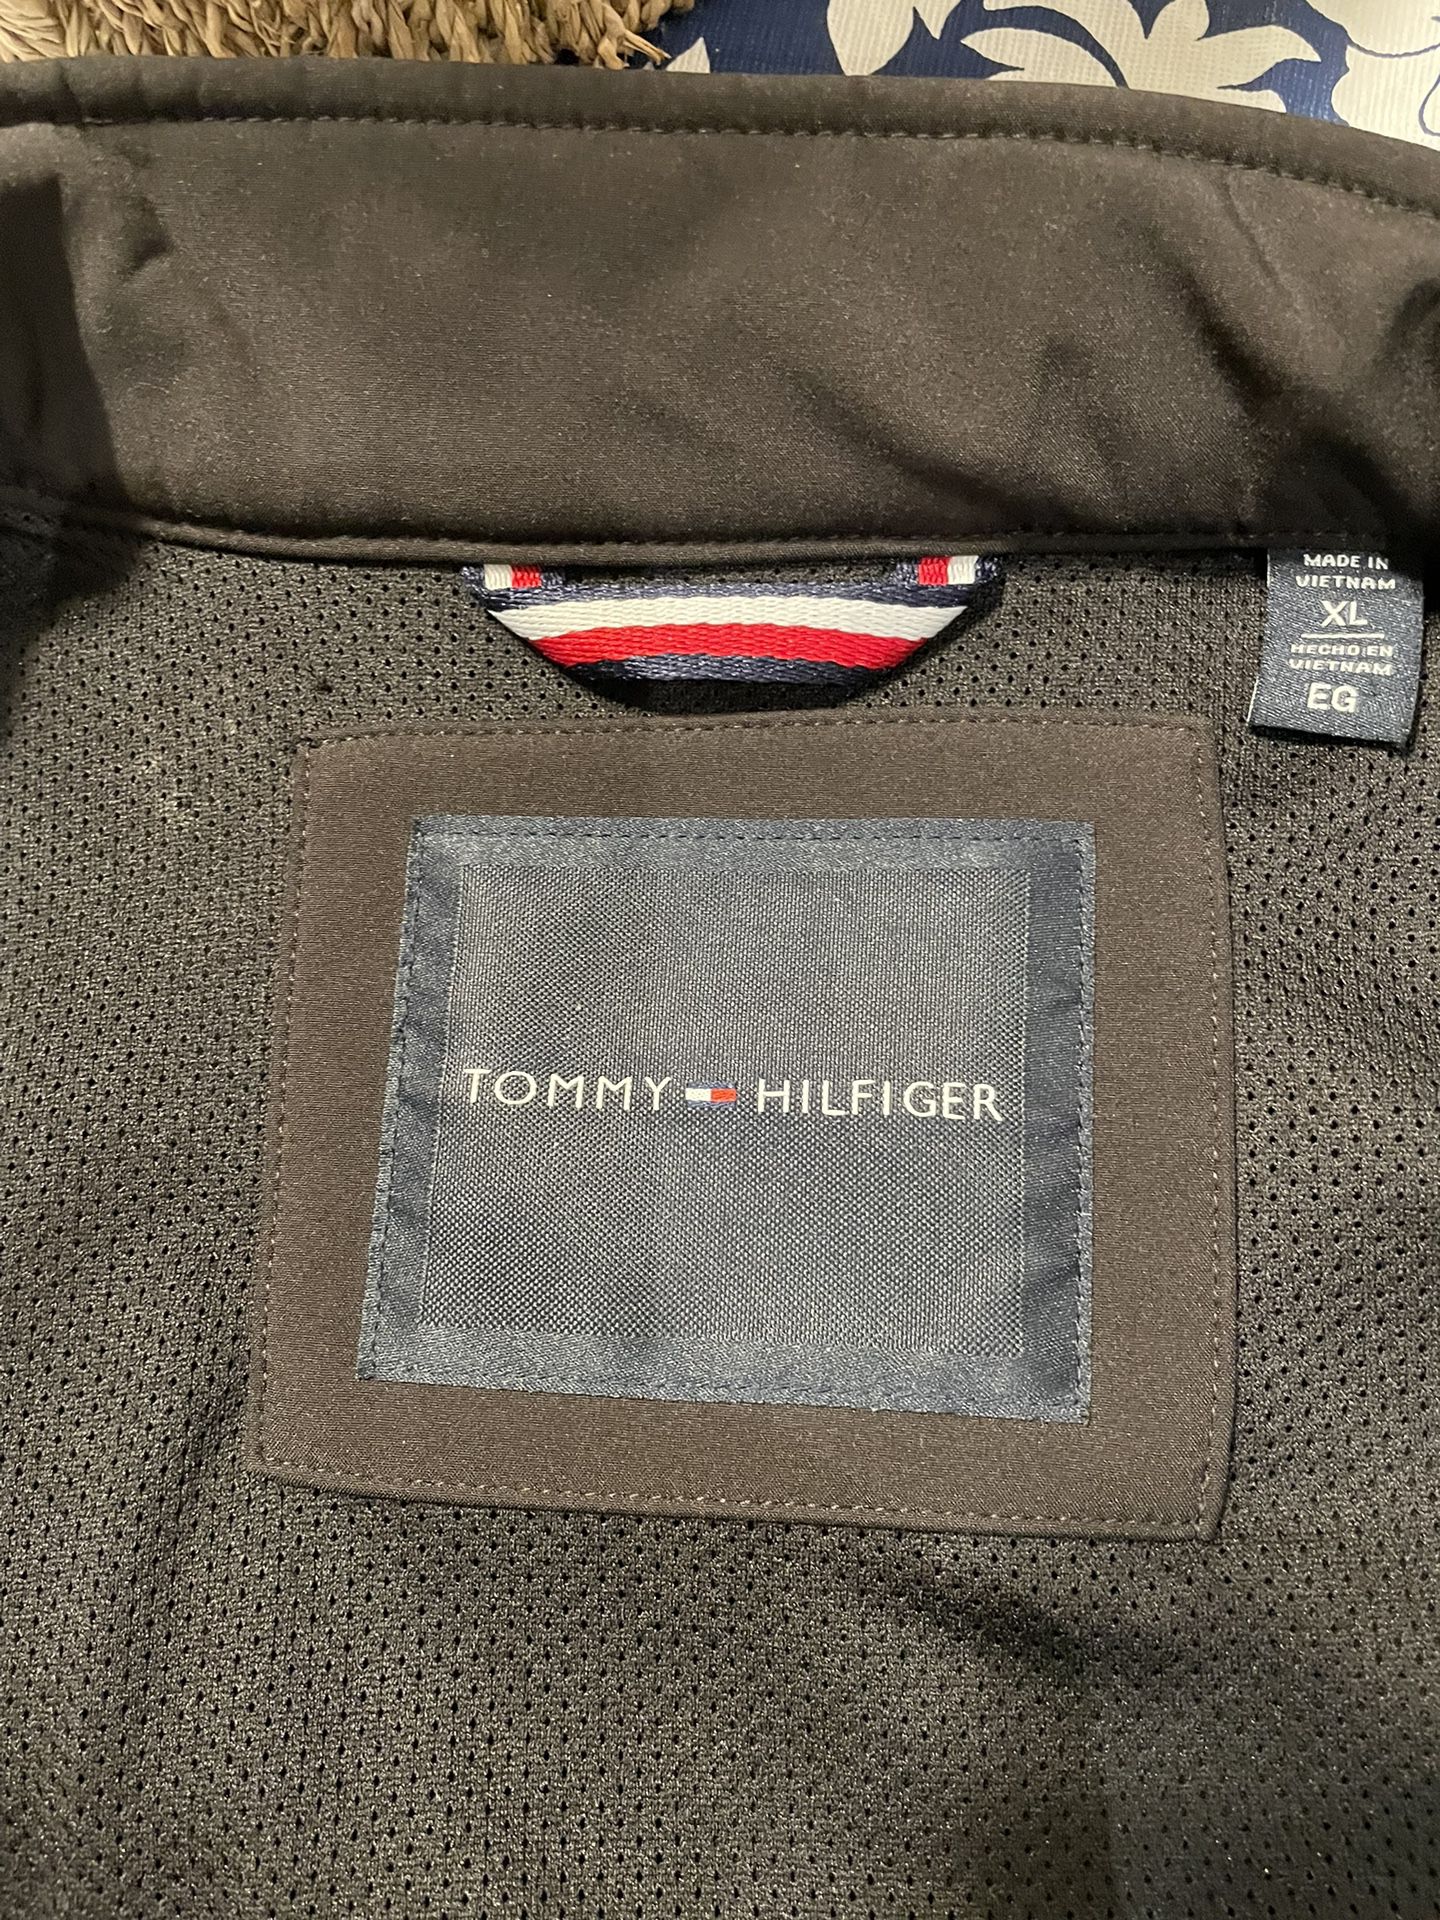 Tommy Hilfiger Men’s Jacket